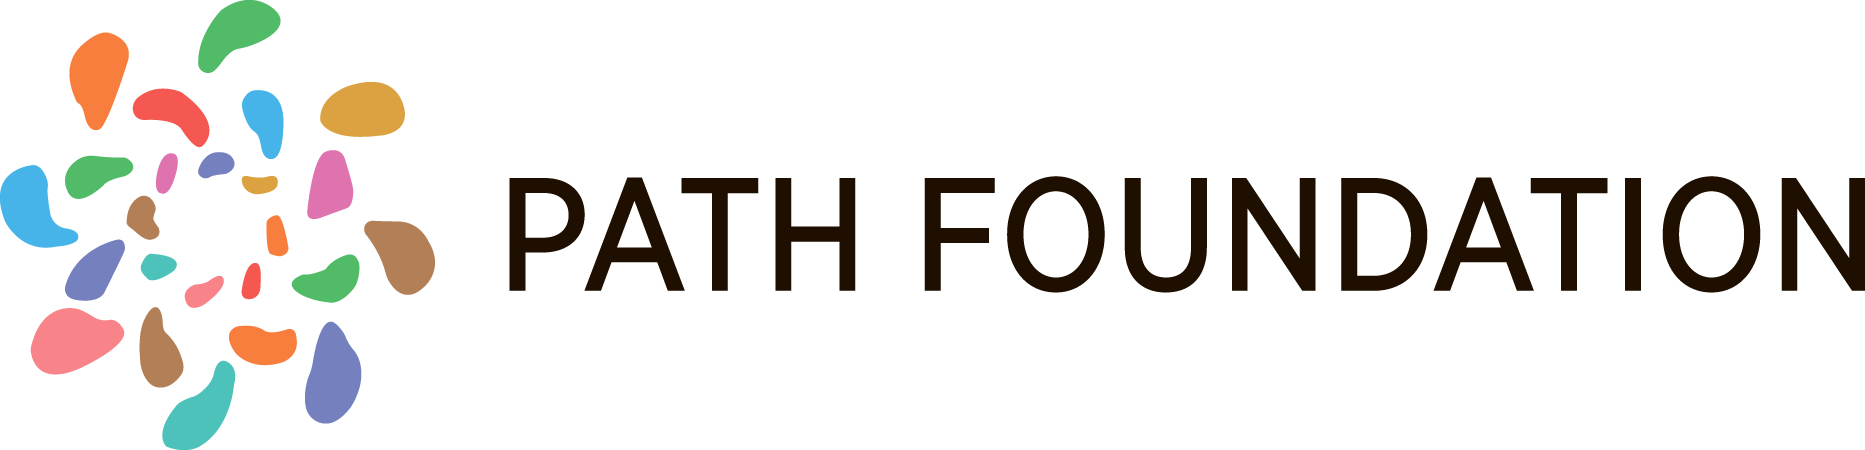 Path Foundation logo